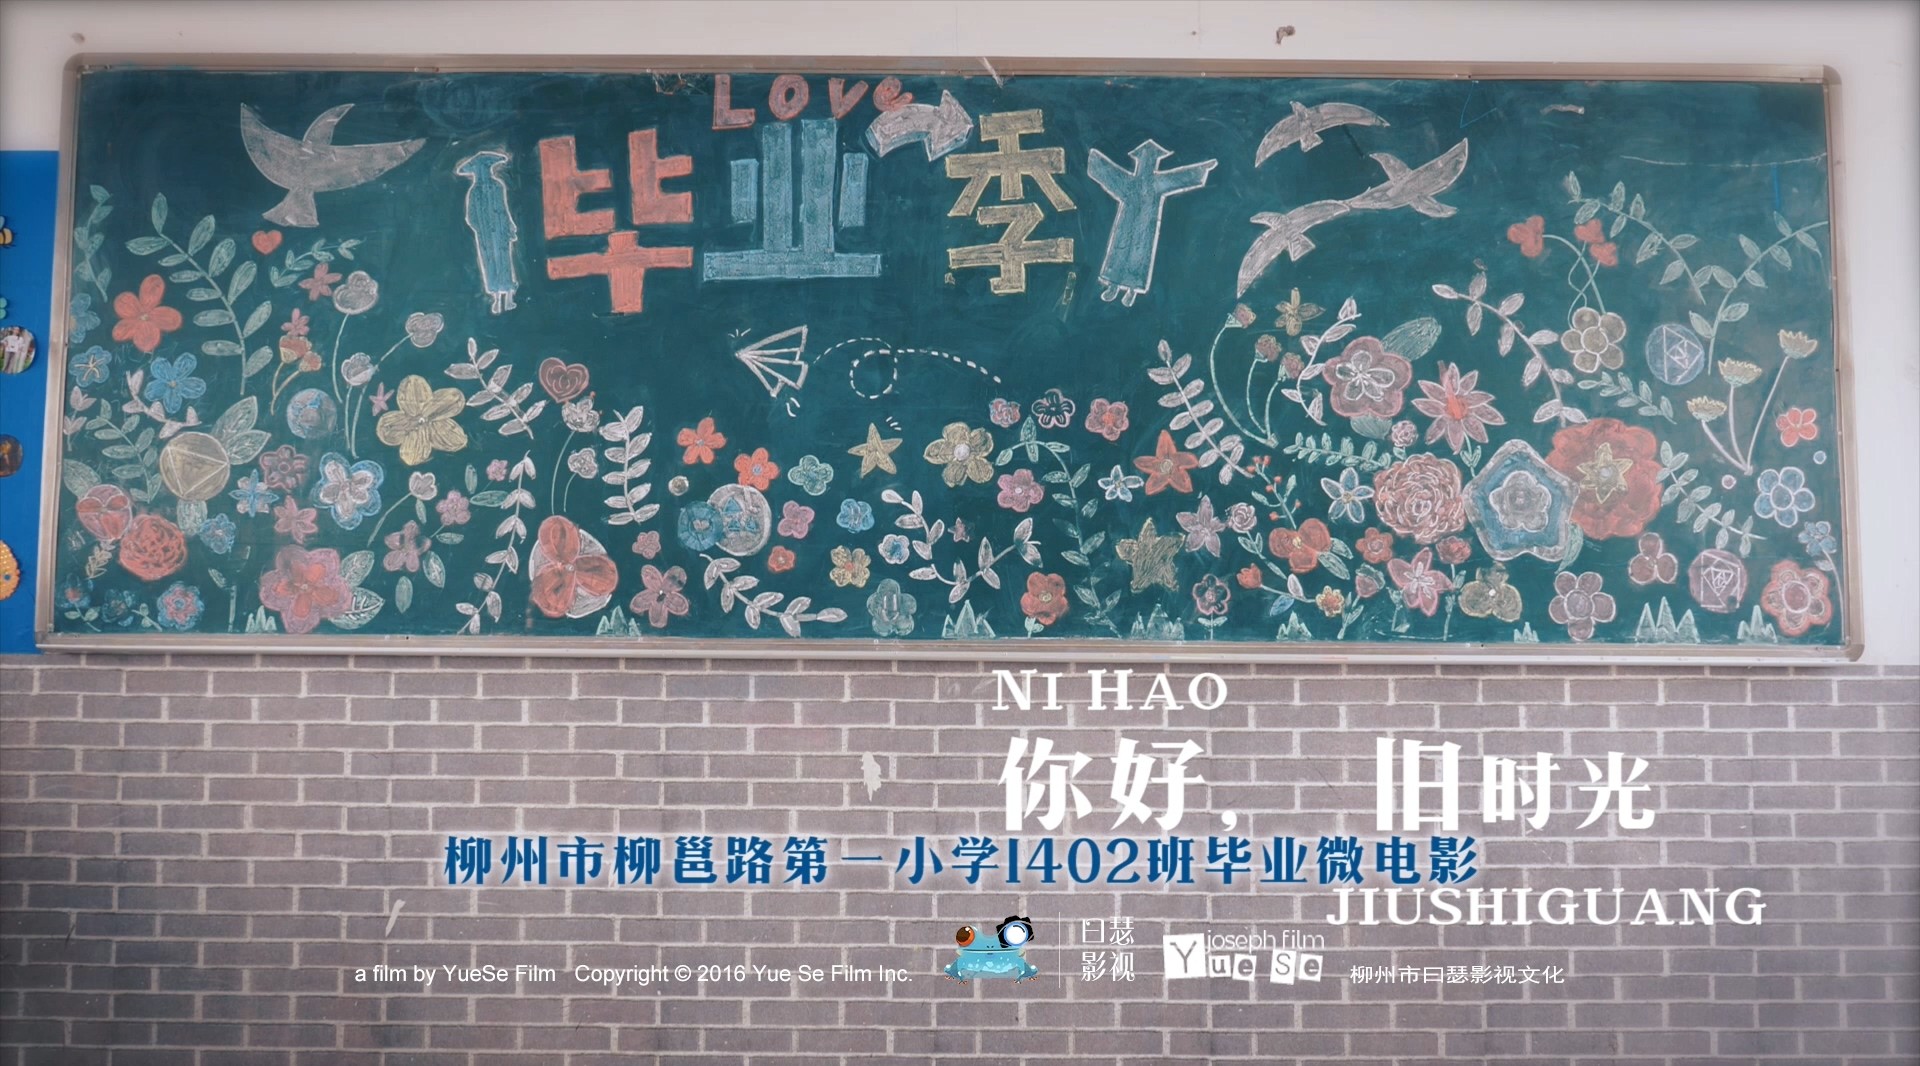 2020年柳州市柳邕路第一小学1402班毕业微电影《你好，旧时光》 